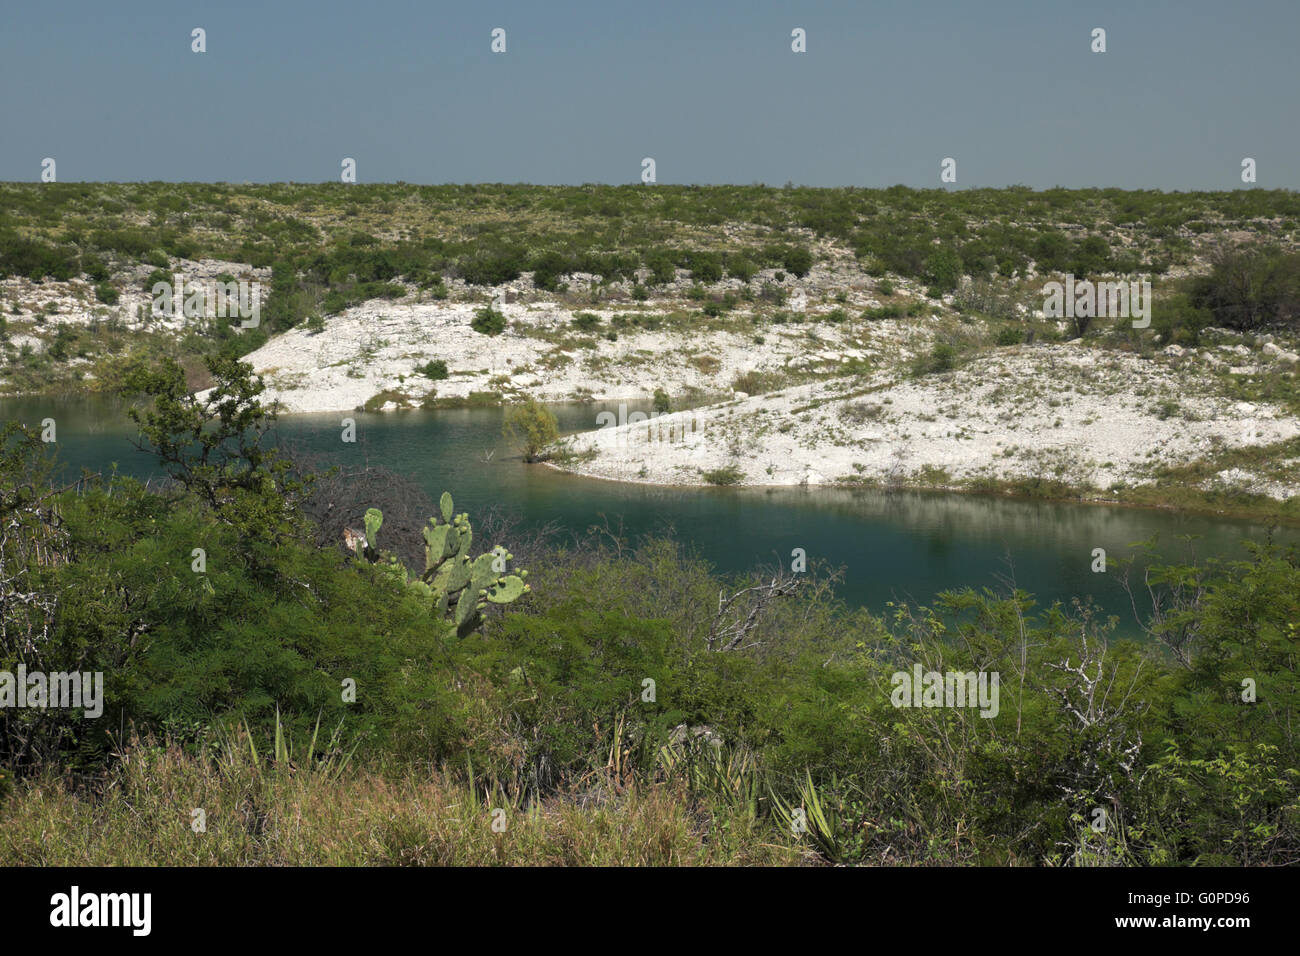 Un ingresso del lago Amistad serbatoio in prossimità del Rio, Texas. La foto mostra un deserto di pietra calcarea piano con prugnolo spazzola. Foto Stock